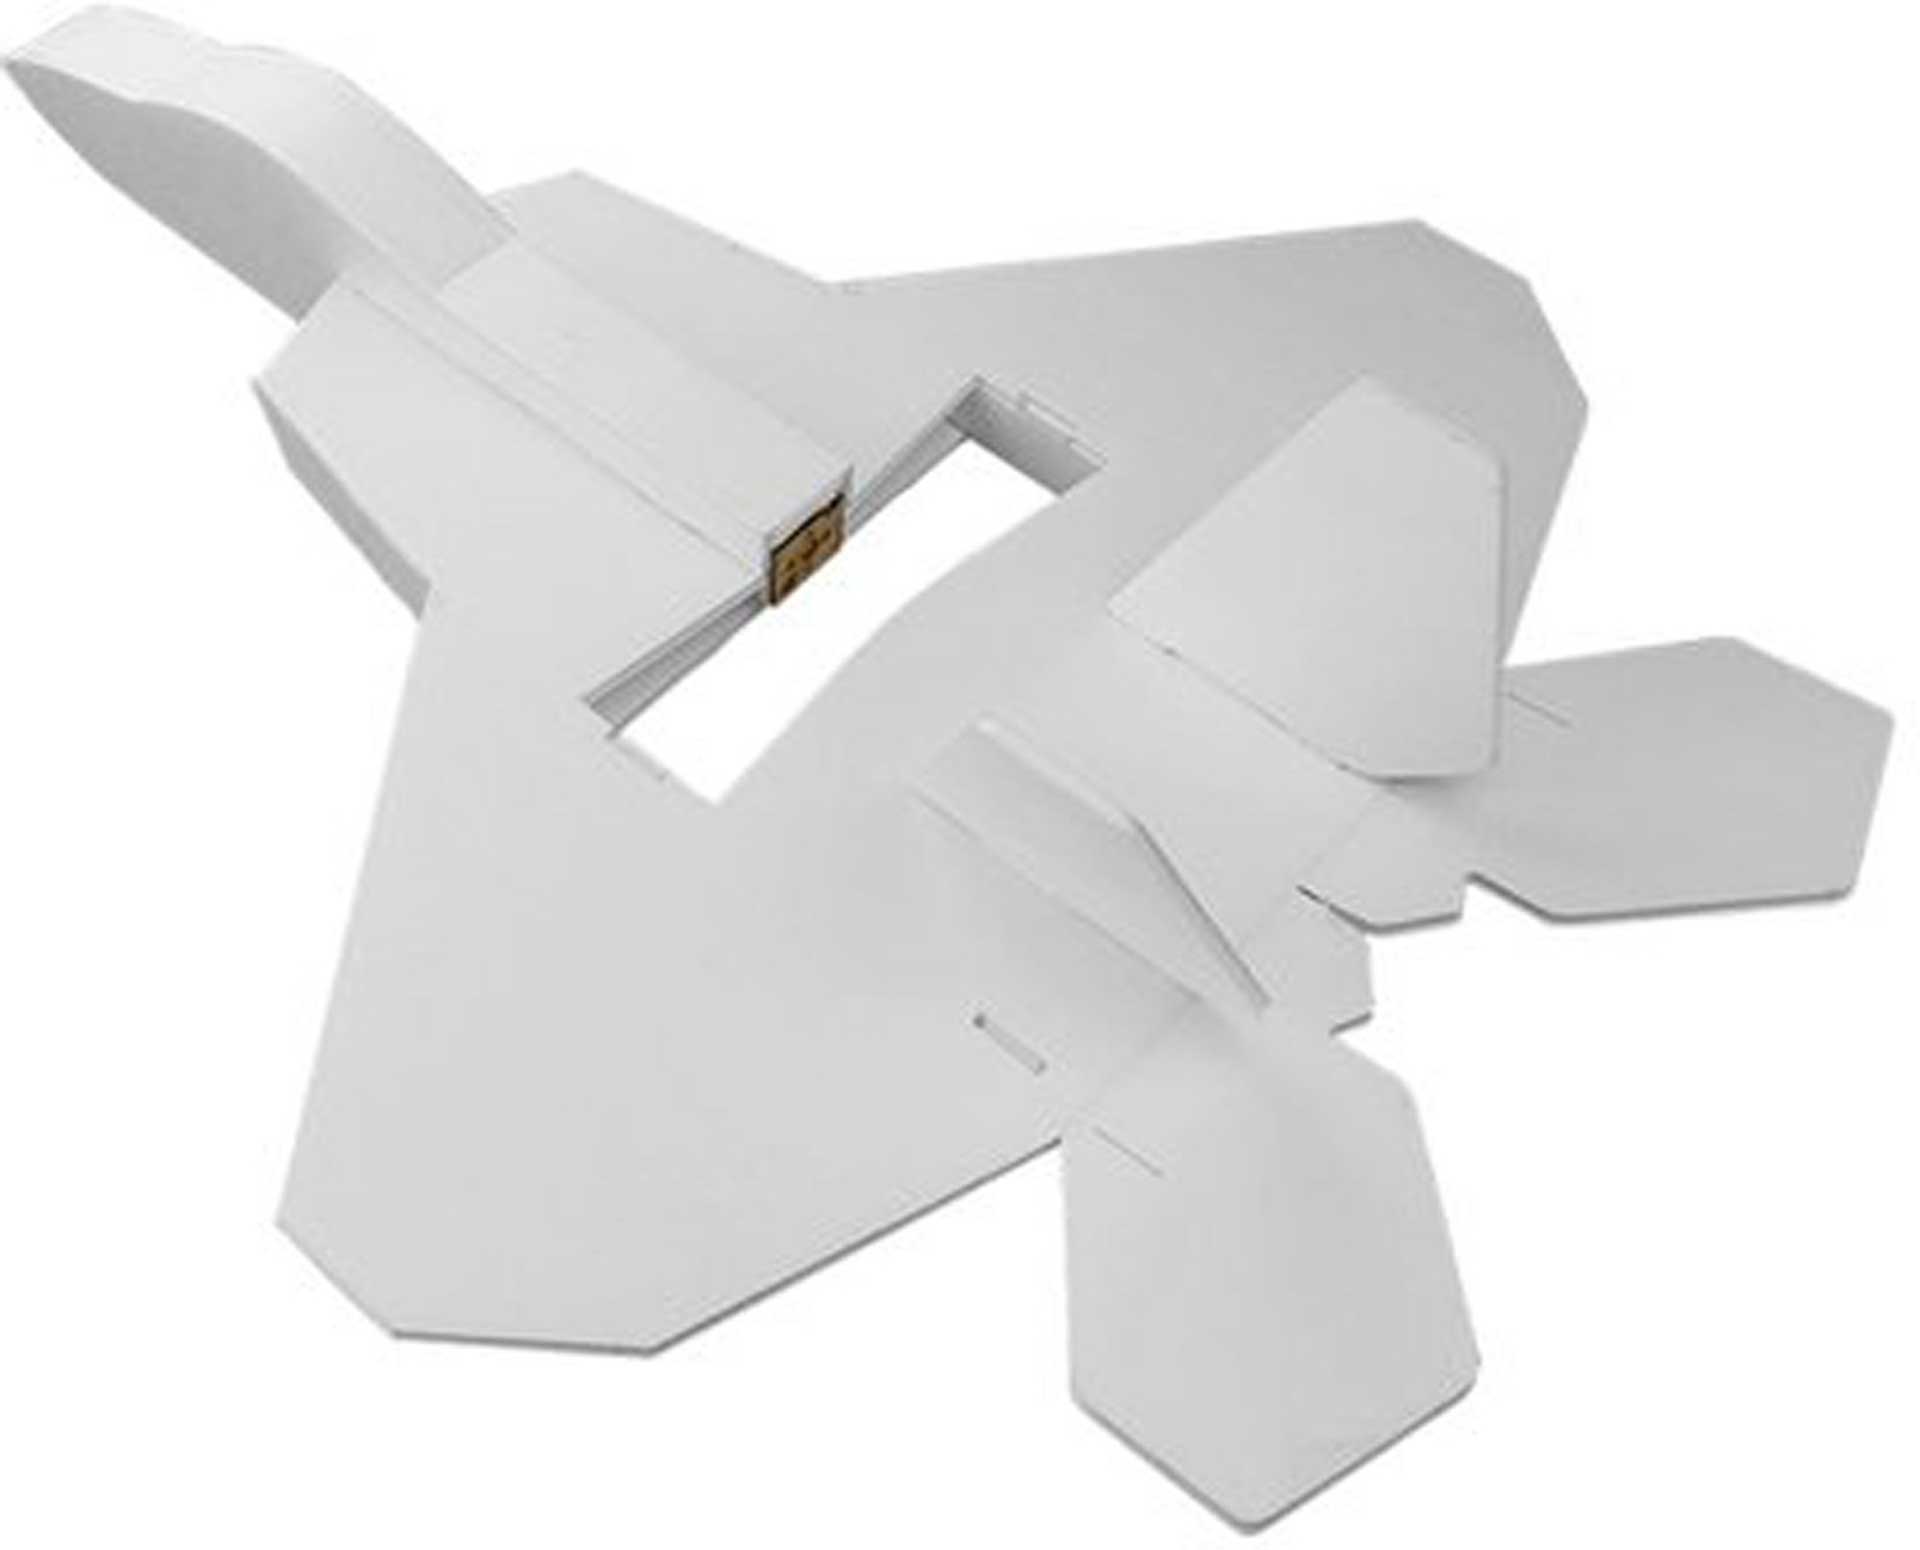 FLITE TEST Mini F-22 Raptor Kit Foam